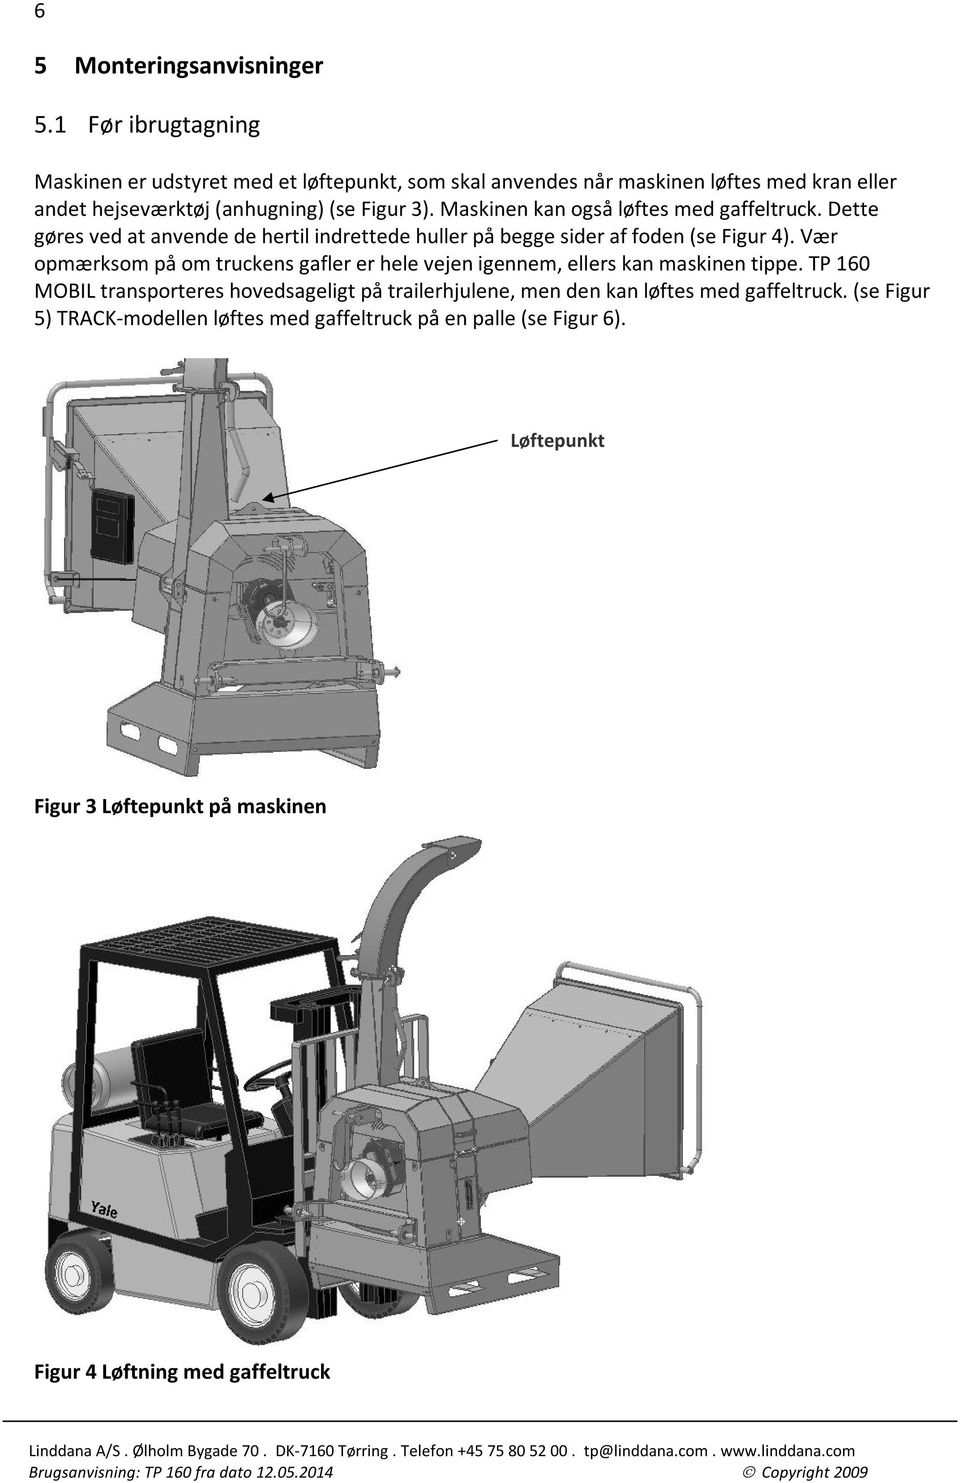 Maskinen kan også løftes med gaffeltruck. Dette gøres ved at anvende de hertil indrettede huller på begge sider af foden (se Figur 4).